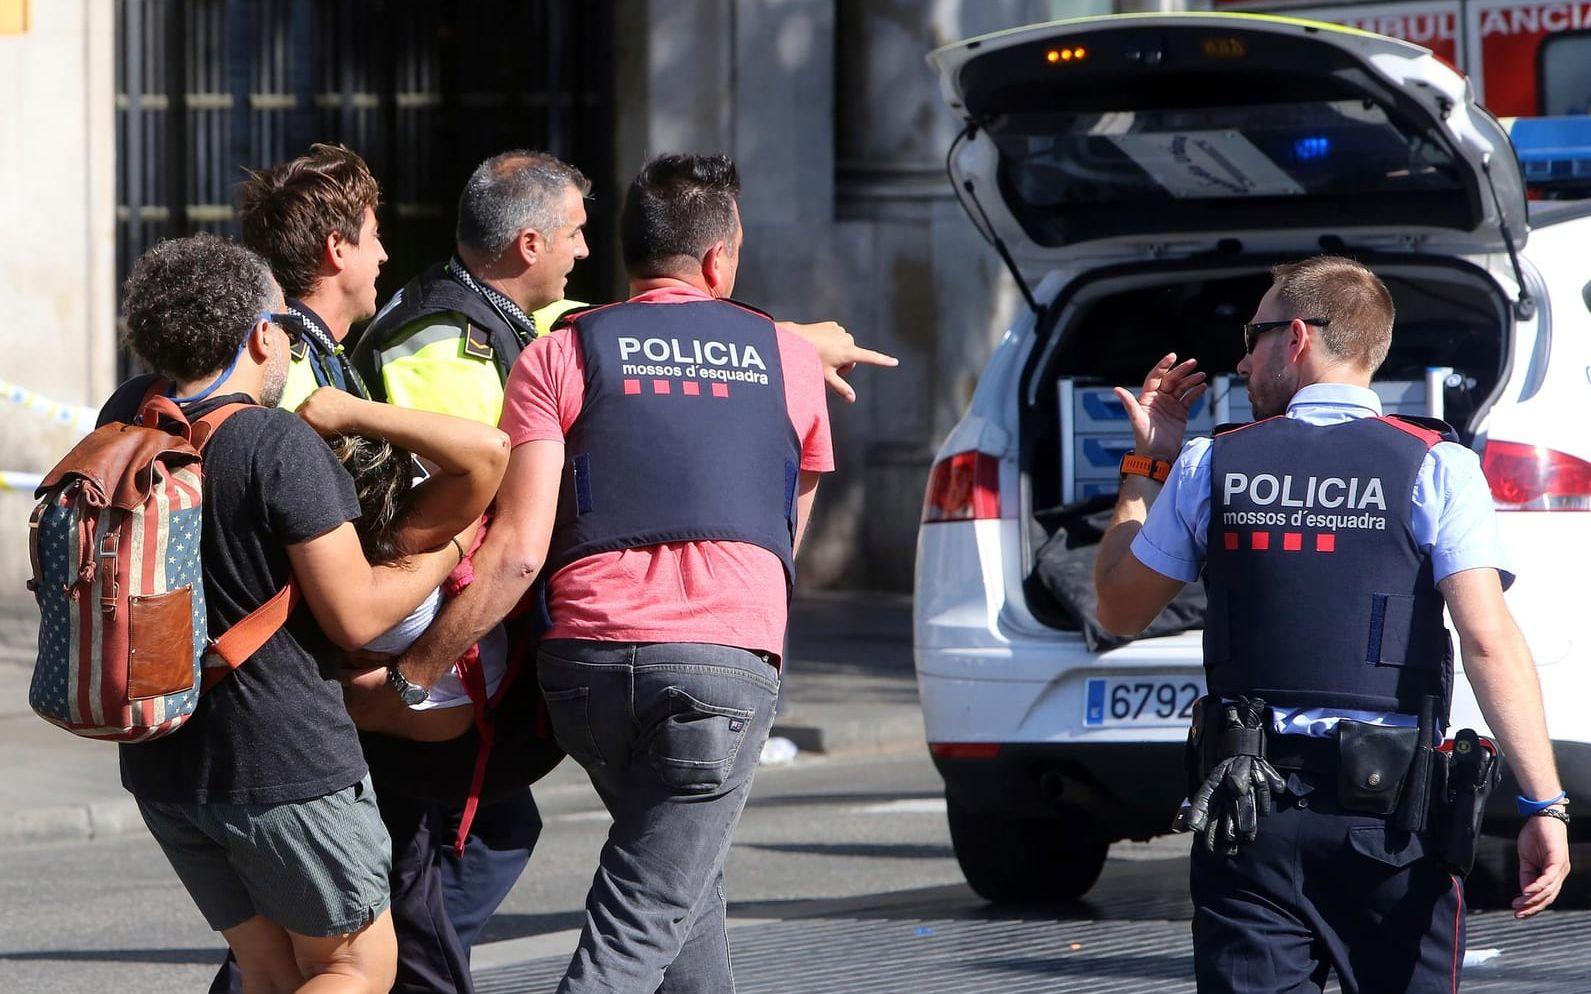 Polis och ambulanspersonal undsätter skadade efter skåpbilsattacken i Barcelona. Bild: TT
